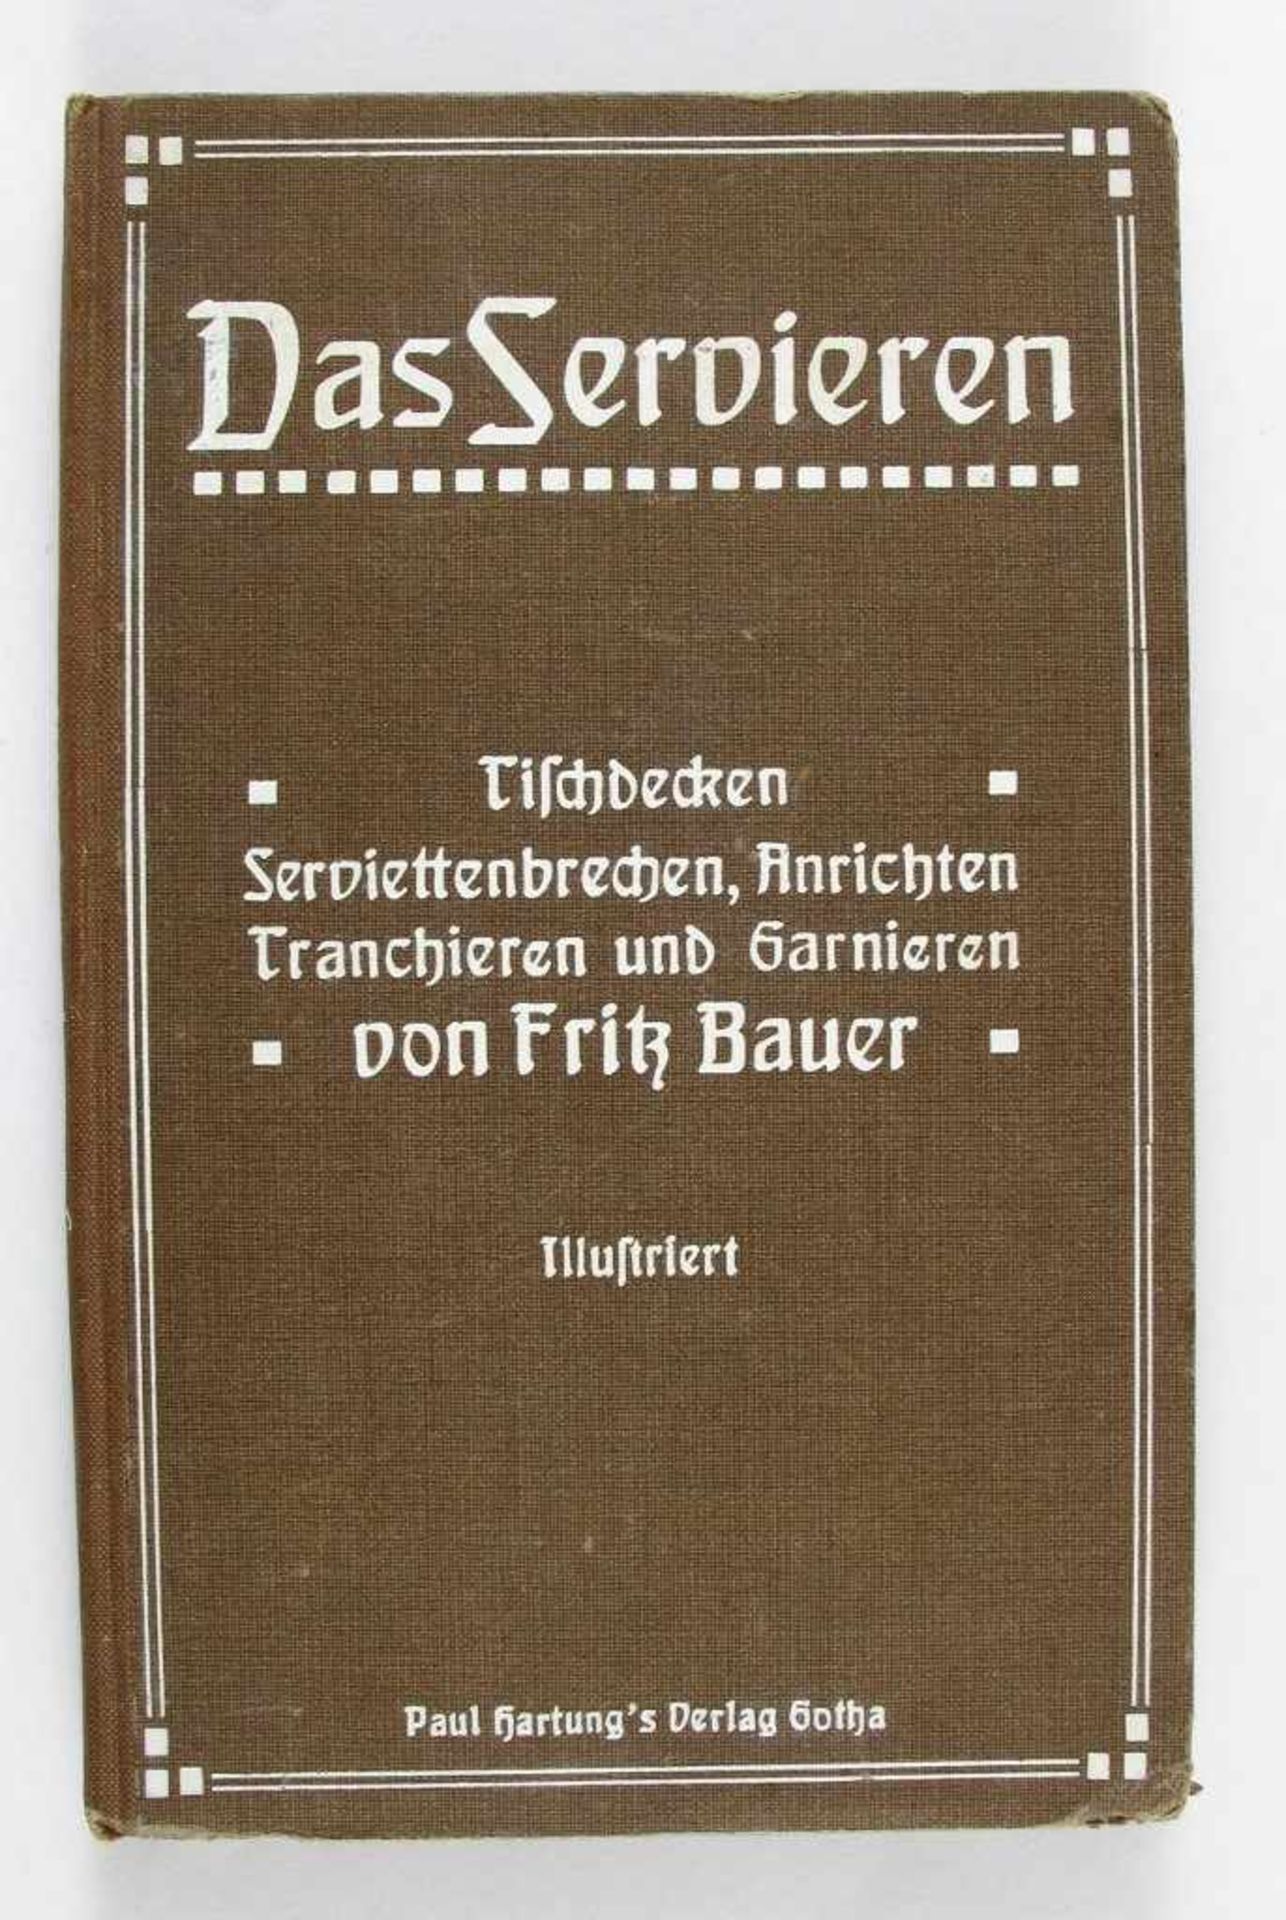 Kochbuch/Tafelkunst: Bauer, Fritz. Das Servieren. Tischdecken - Serviettenbrechen, Anrichten,